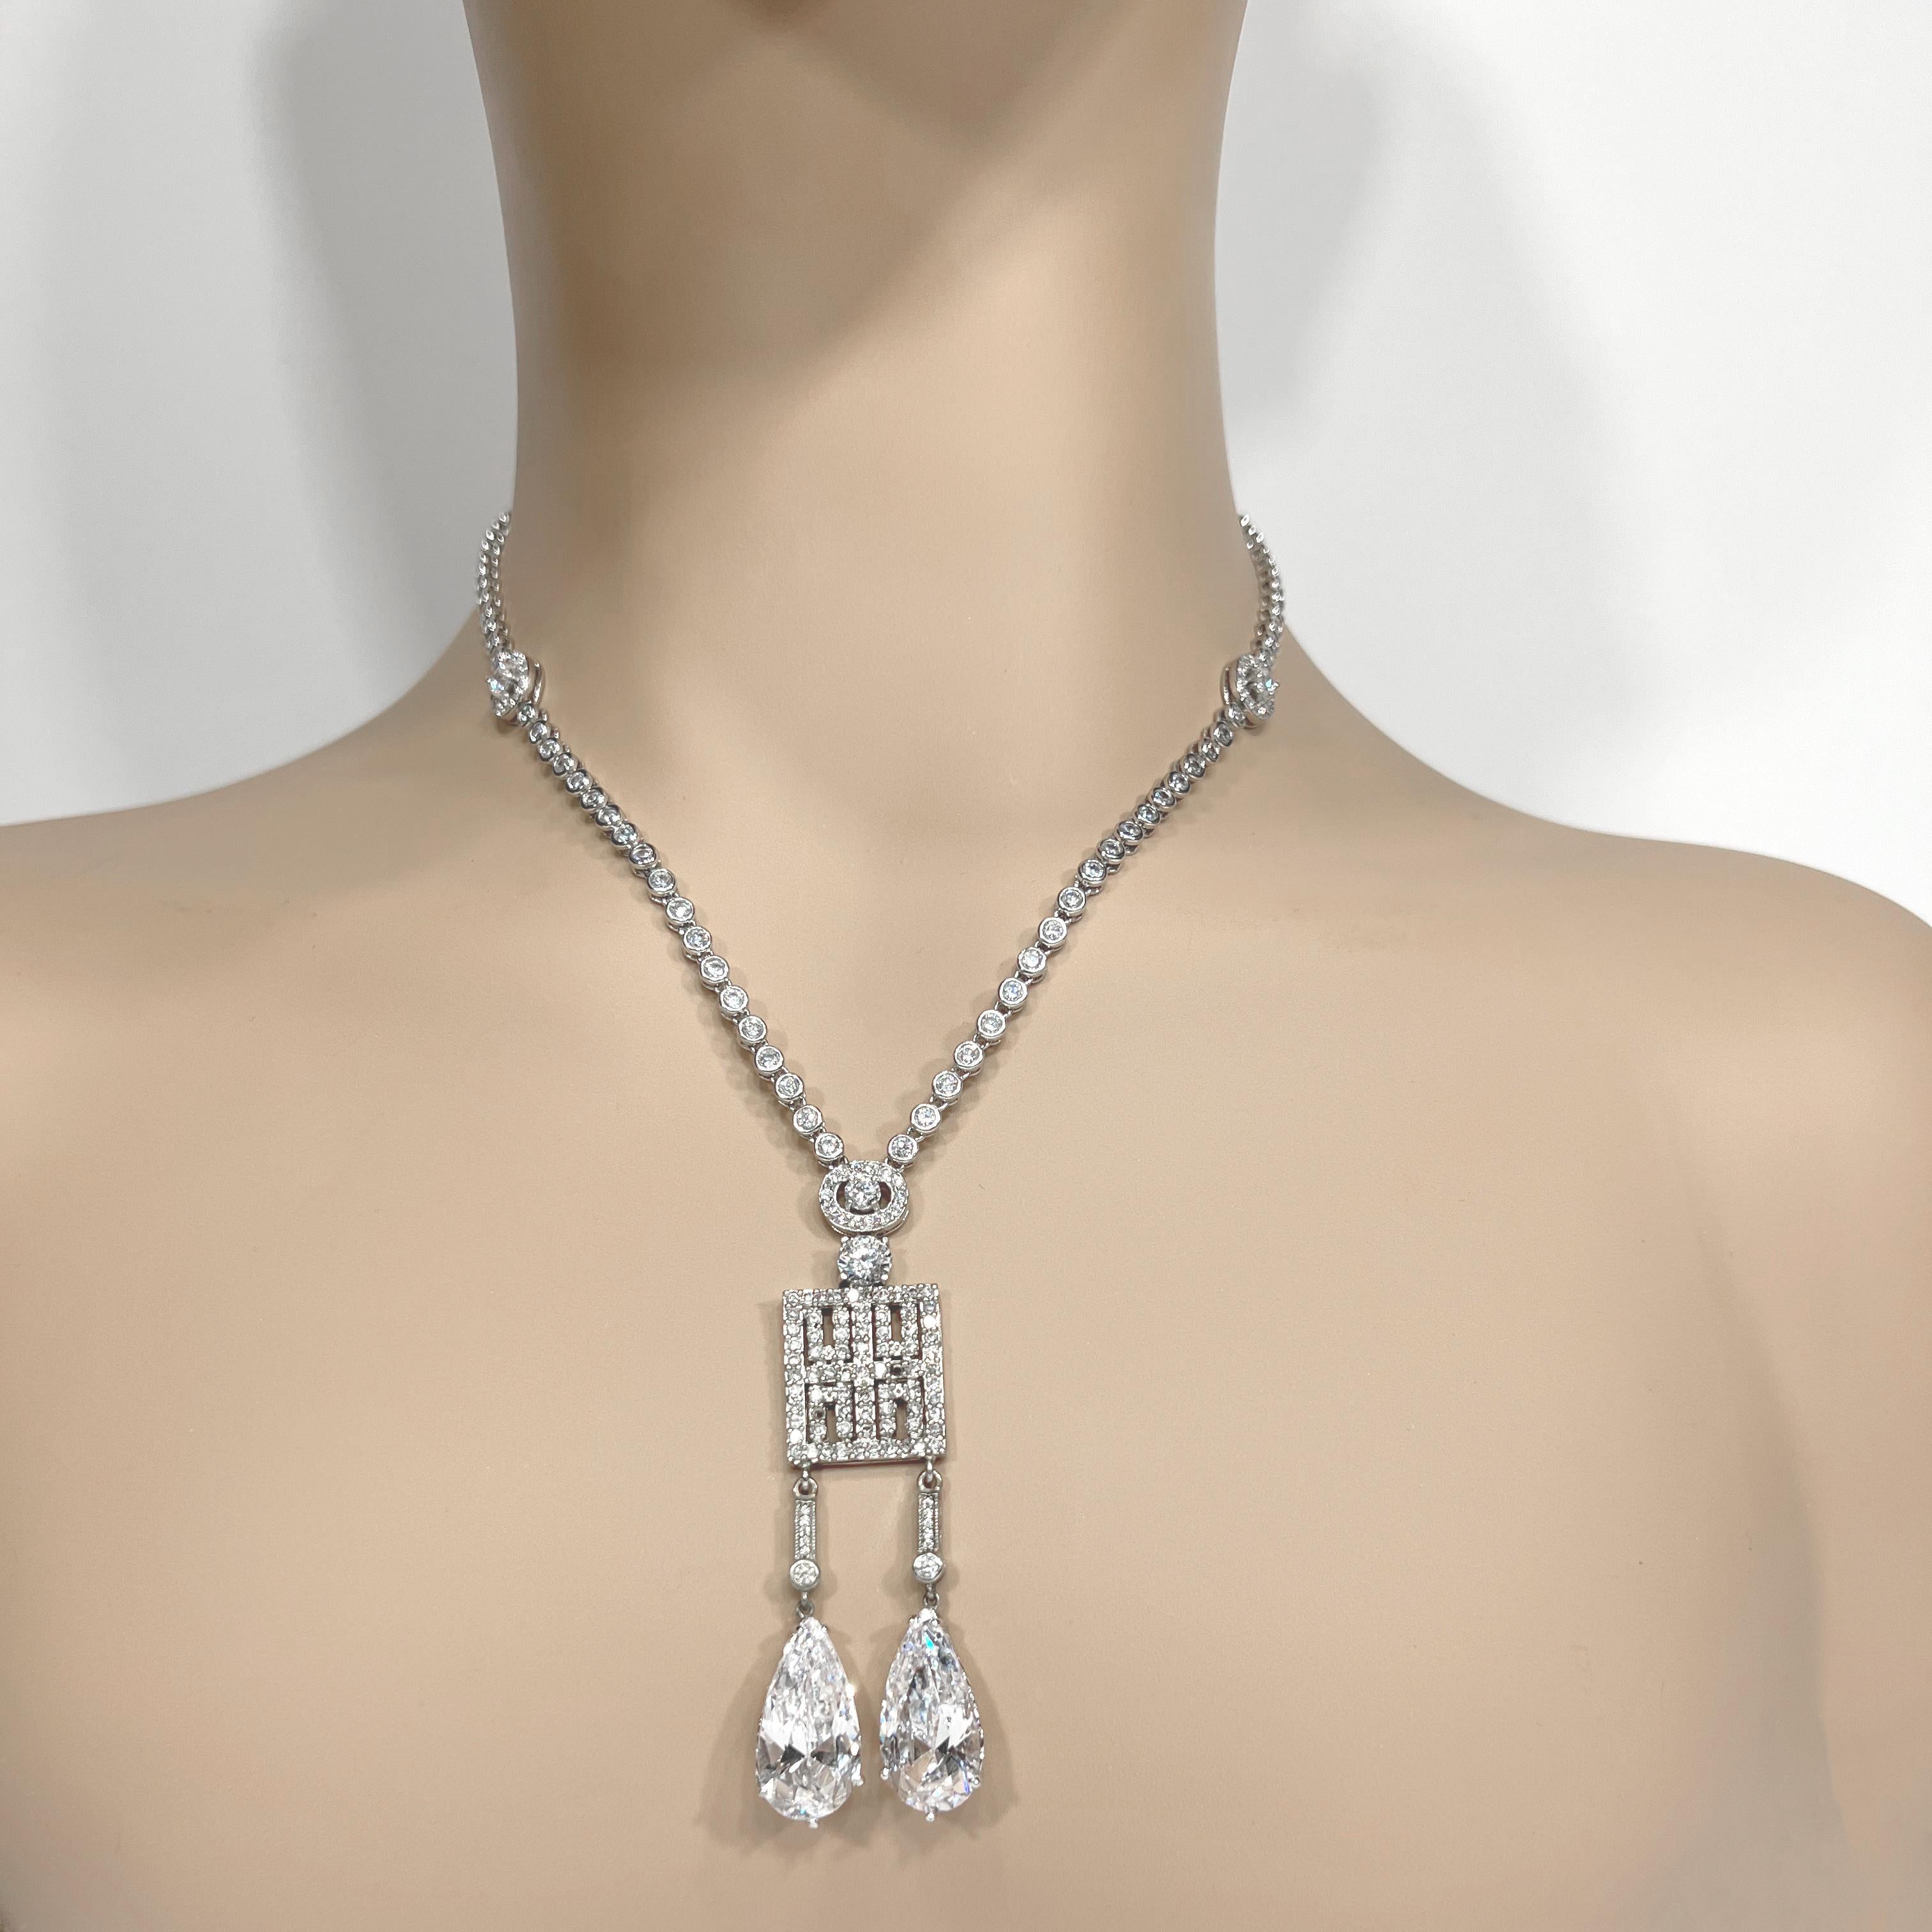 Halskette Vintage Cartier Look von Clive Kandel, Kostüm Schmuck Nachlass Diamanten Halskette (Antiker Kissenschliff)